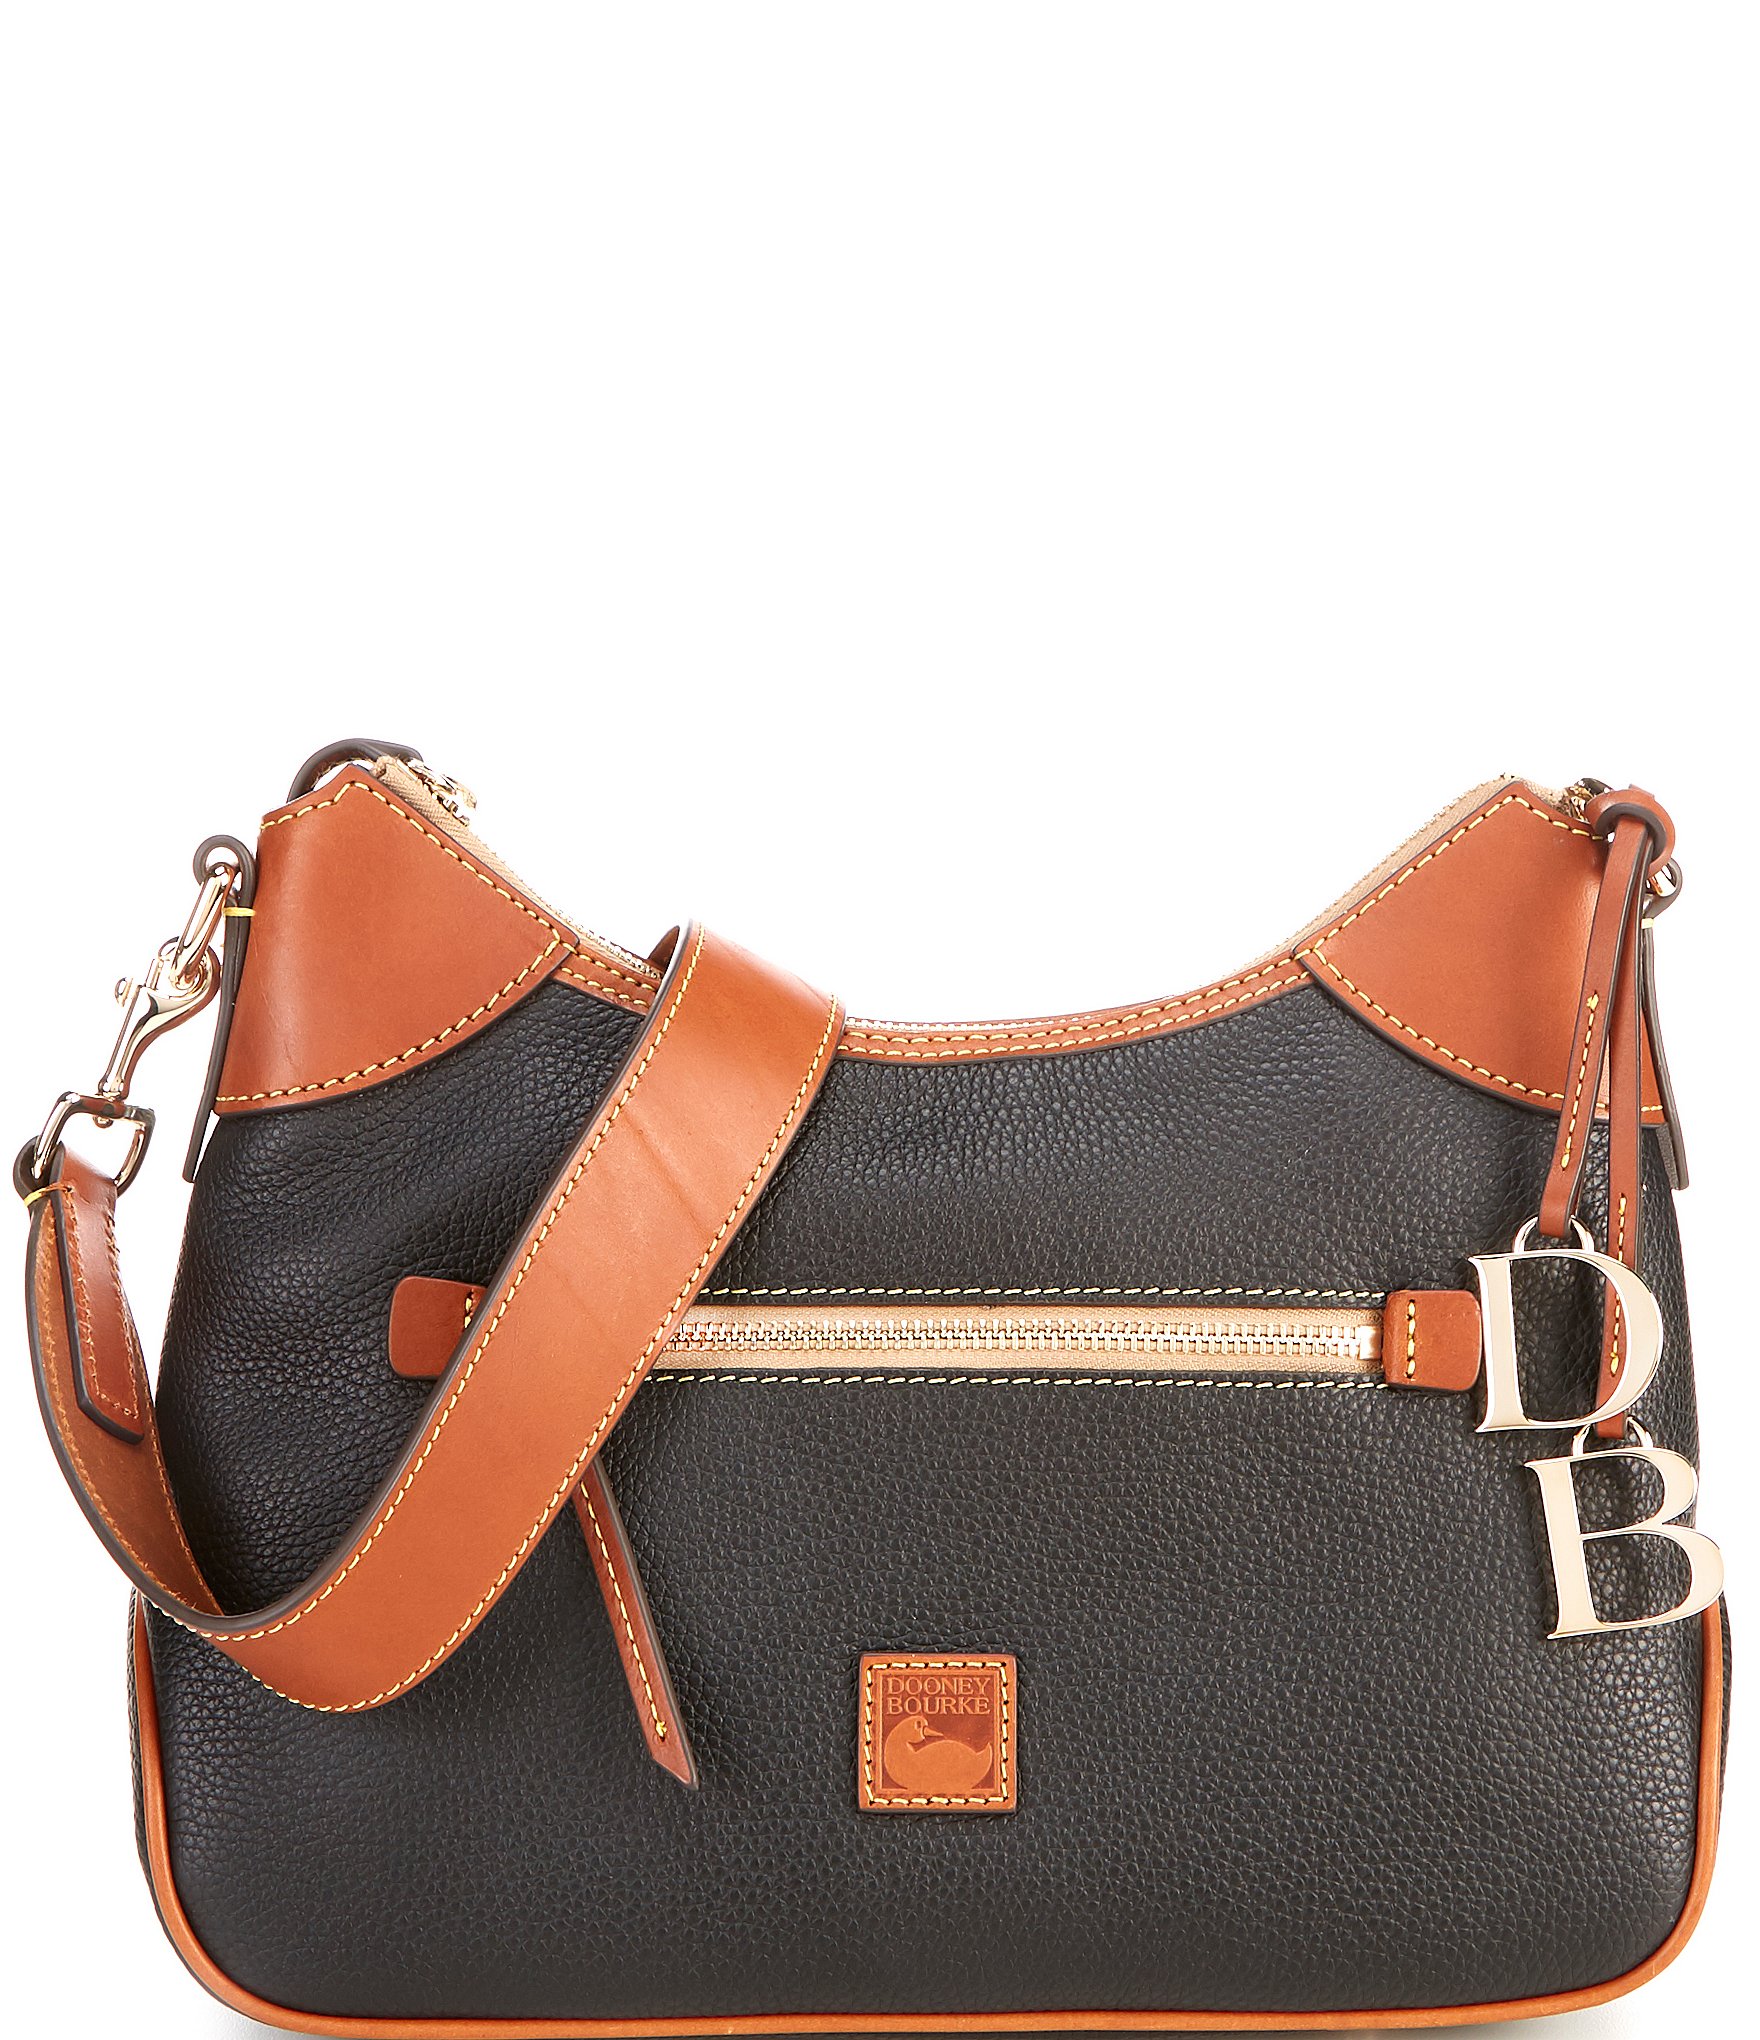 Dooney & Bourke Handbags